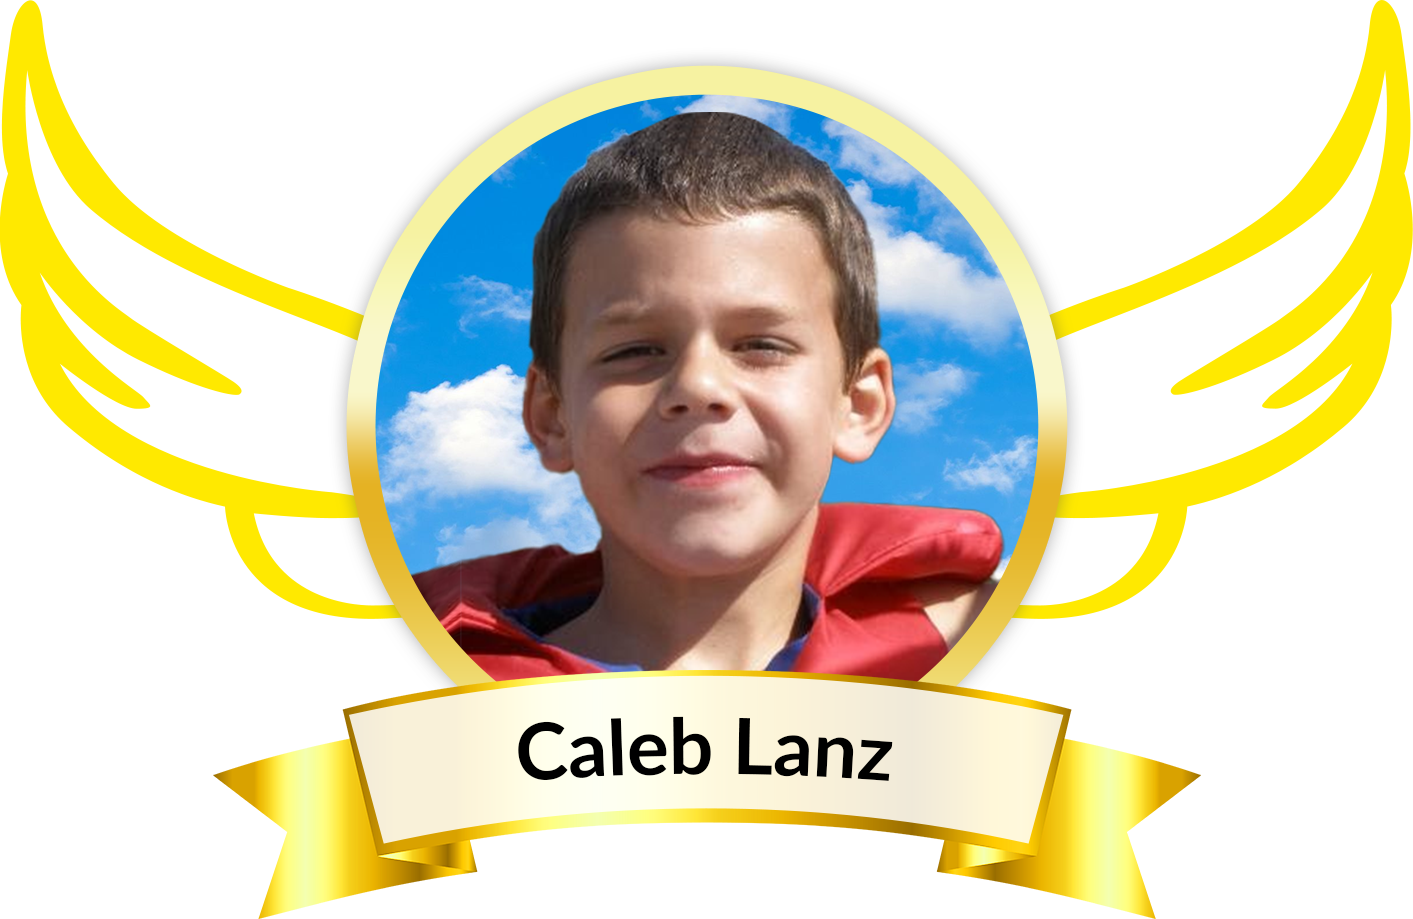 Caleb Lanz